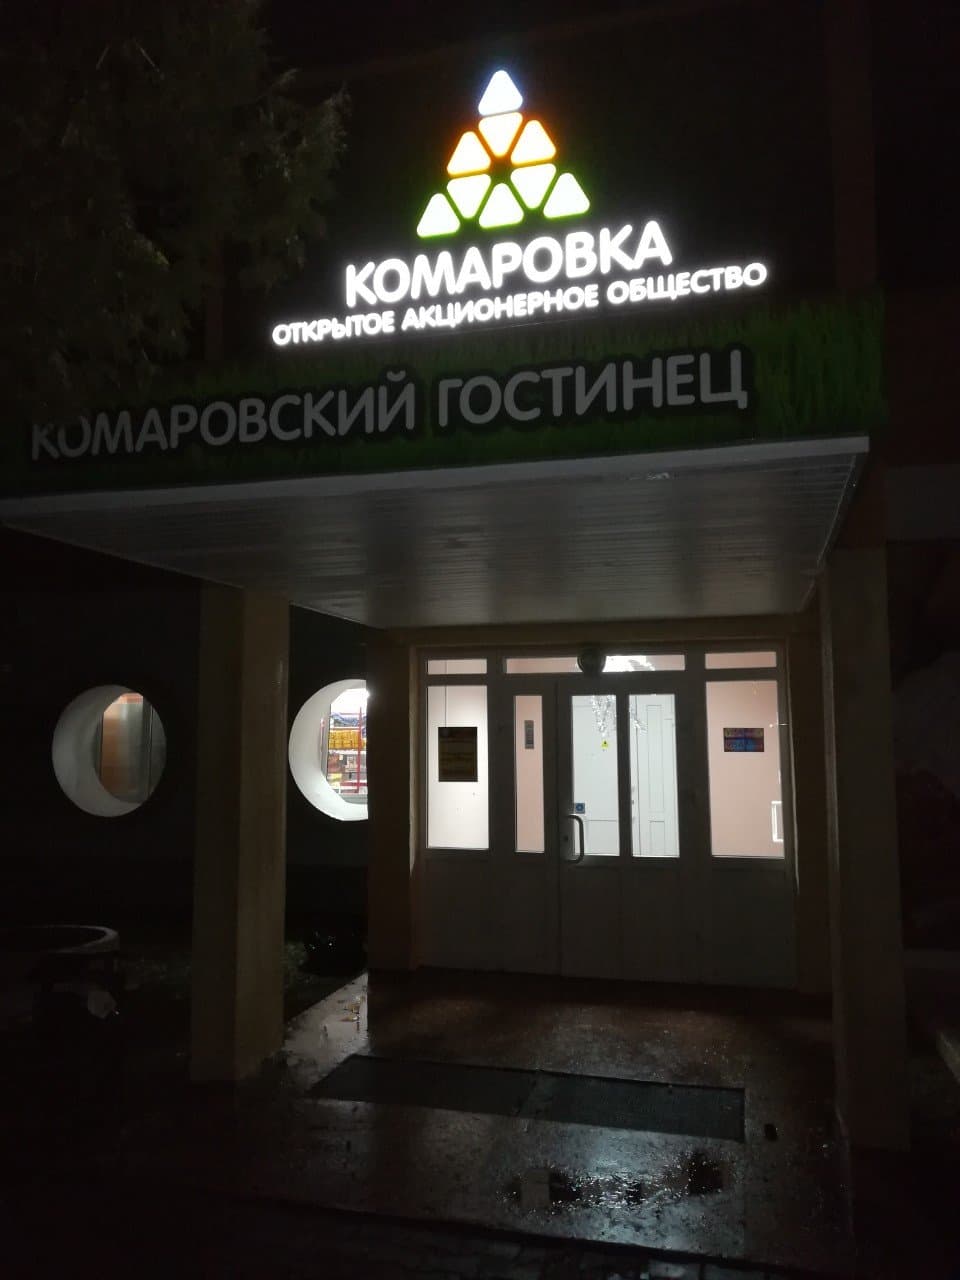 Вывеска Комаровский гостинец  - вид ночью